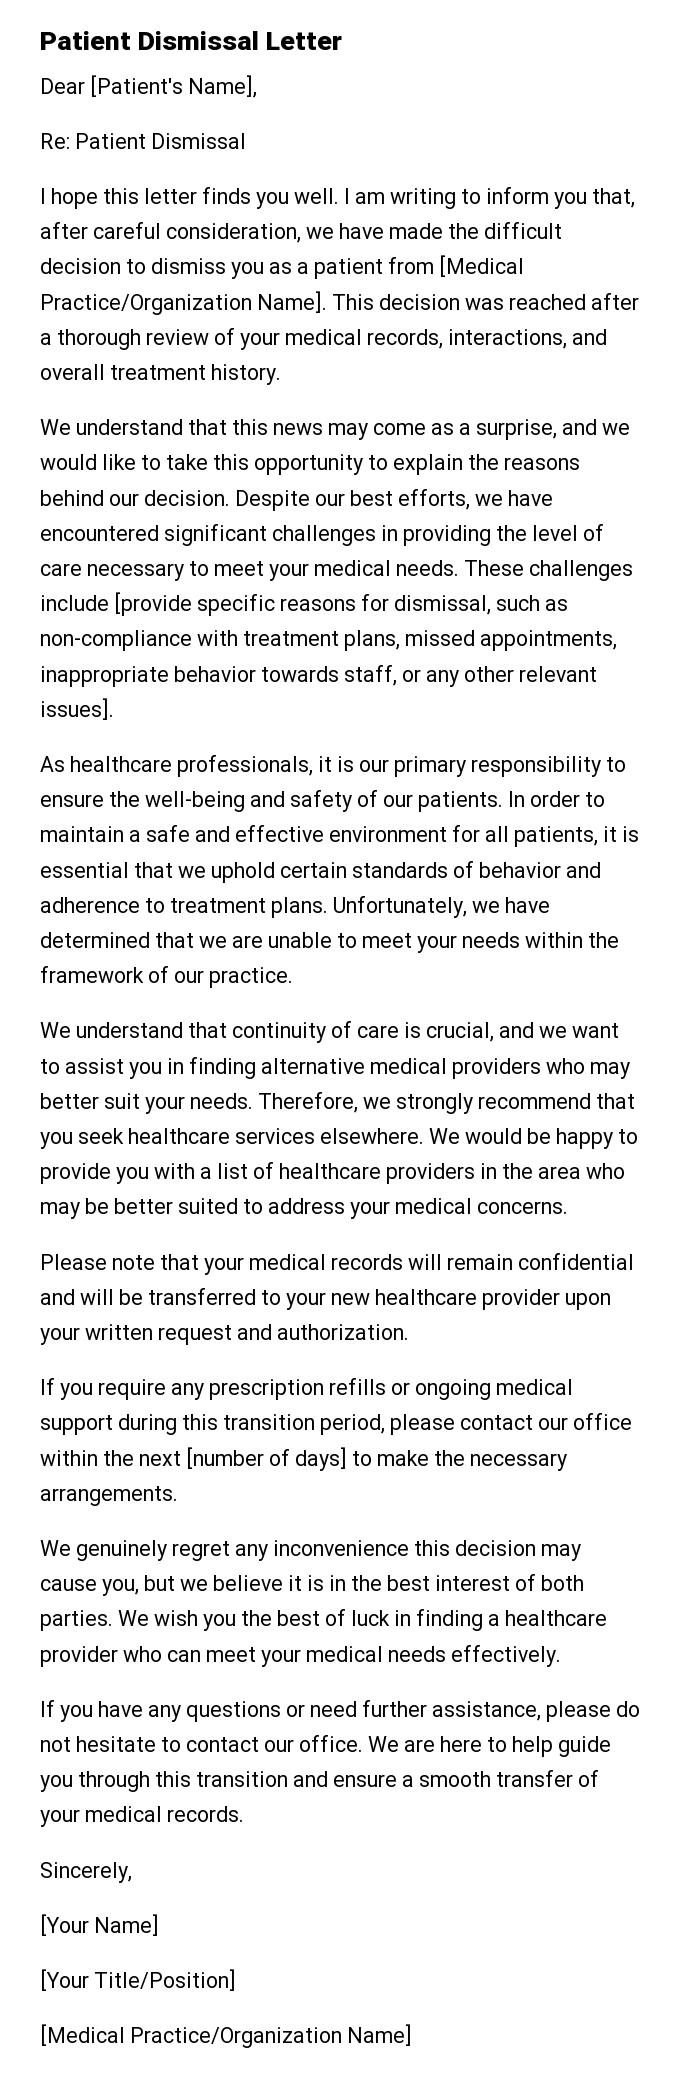 Patient Dismissal Letter